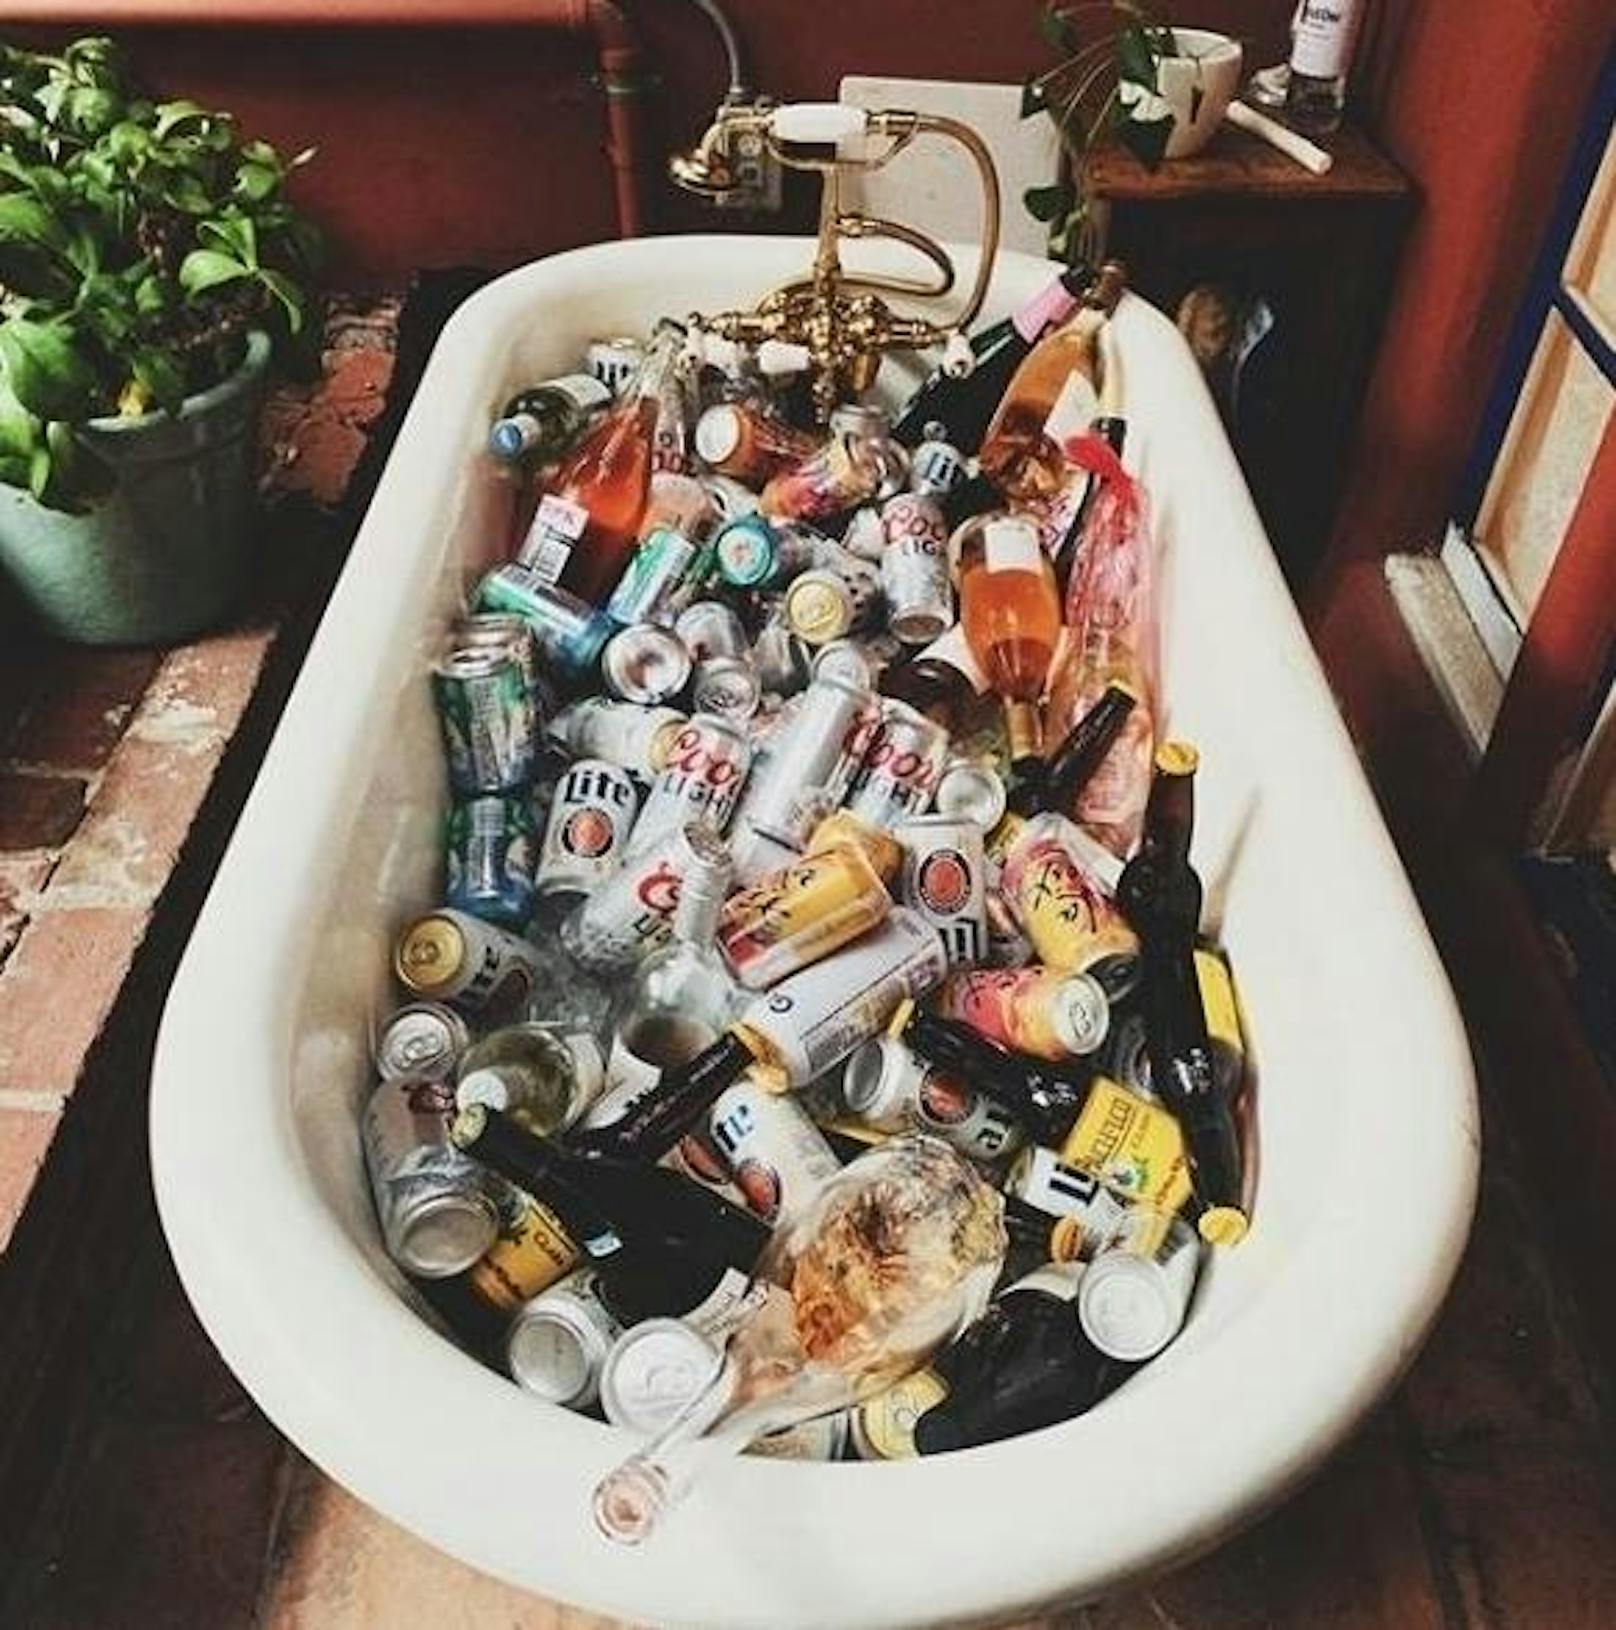 01.06.2019: Nur mit dem Wort "Weekend" betitelte Kate Hudson das Foto dieser gut mit diversen Alkoholika befüllten Badewanne. Scheint sehr feuchtfröhlich geworden zu sein.